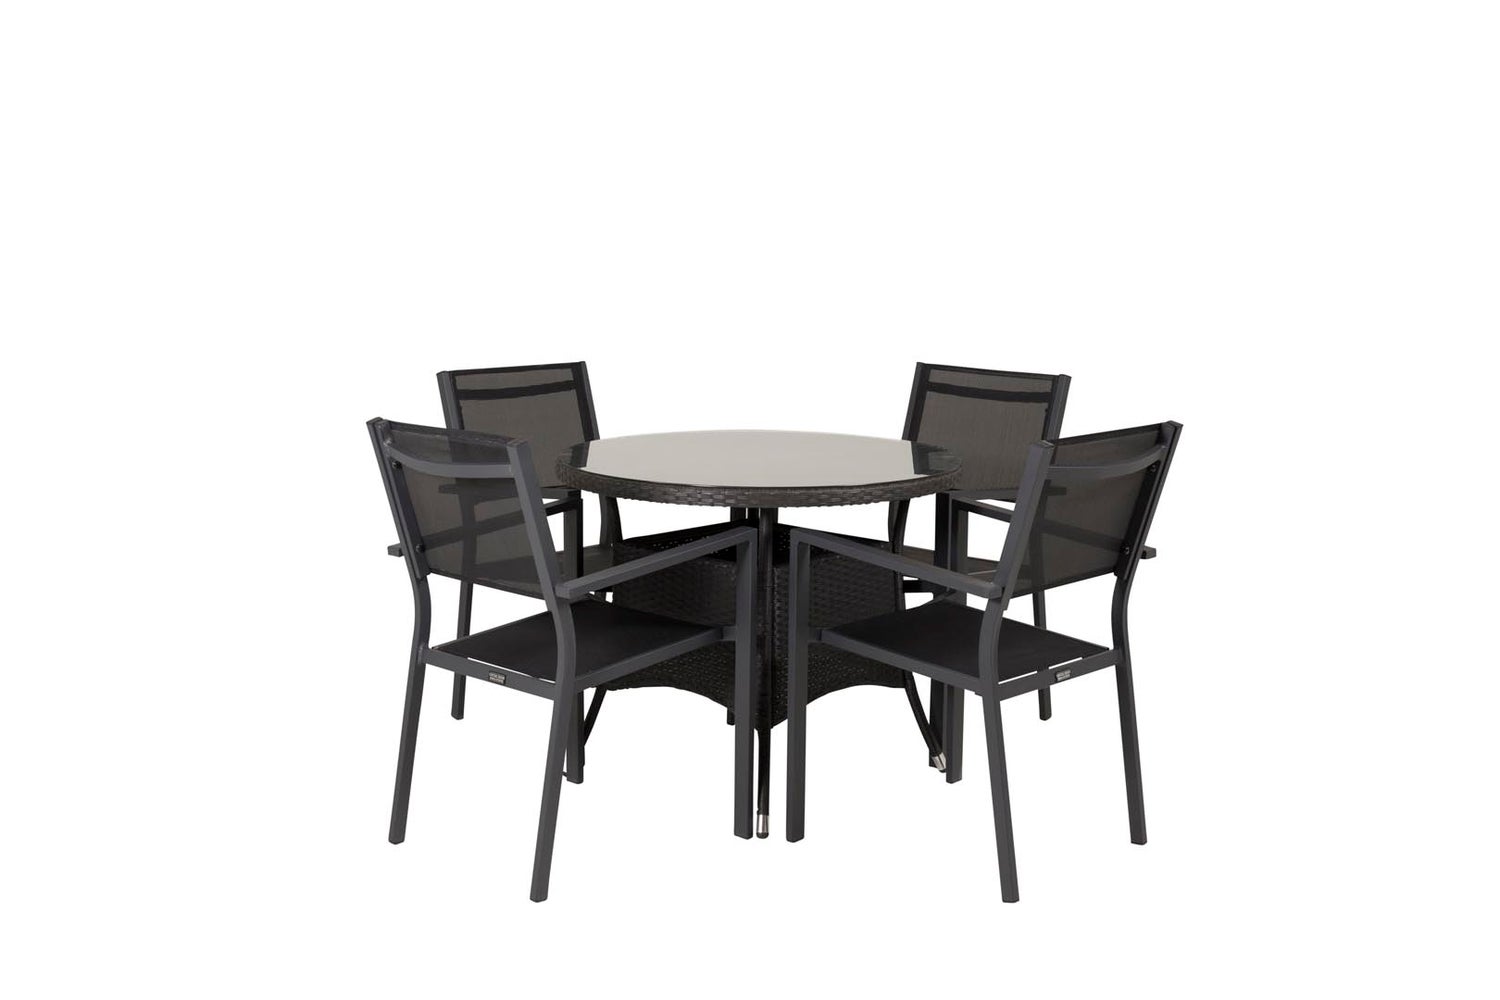 Volta Gartenset Tisch 90x90cm, 4 Stühle Copacabana, schwarz,schwarz.